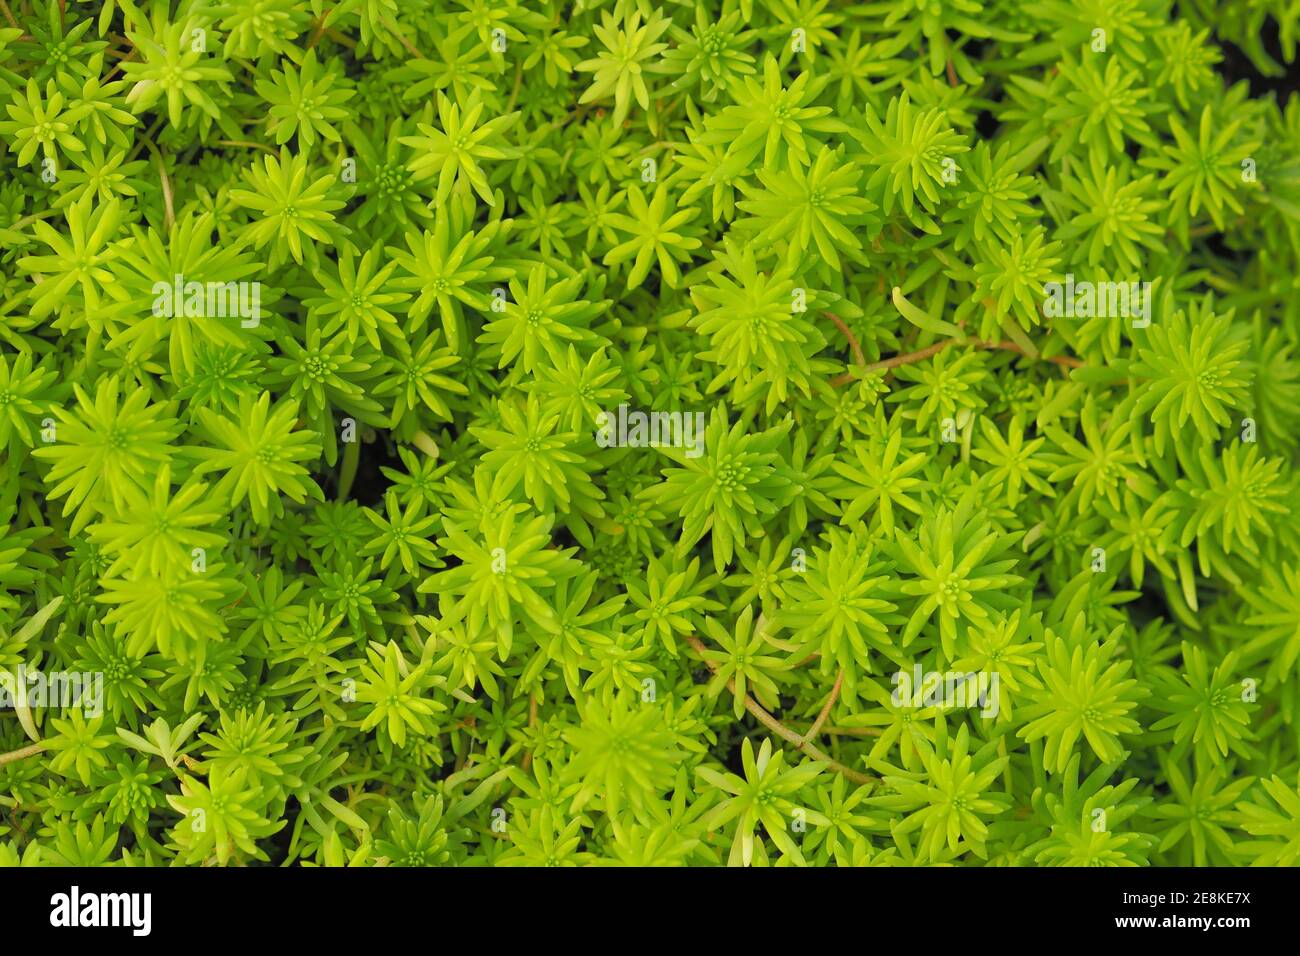 Sedum sp. Crassulaceae Textures and background. Stock Photo